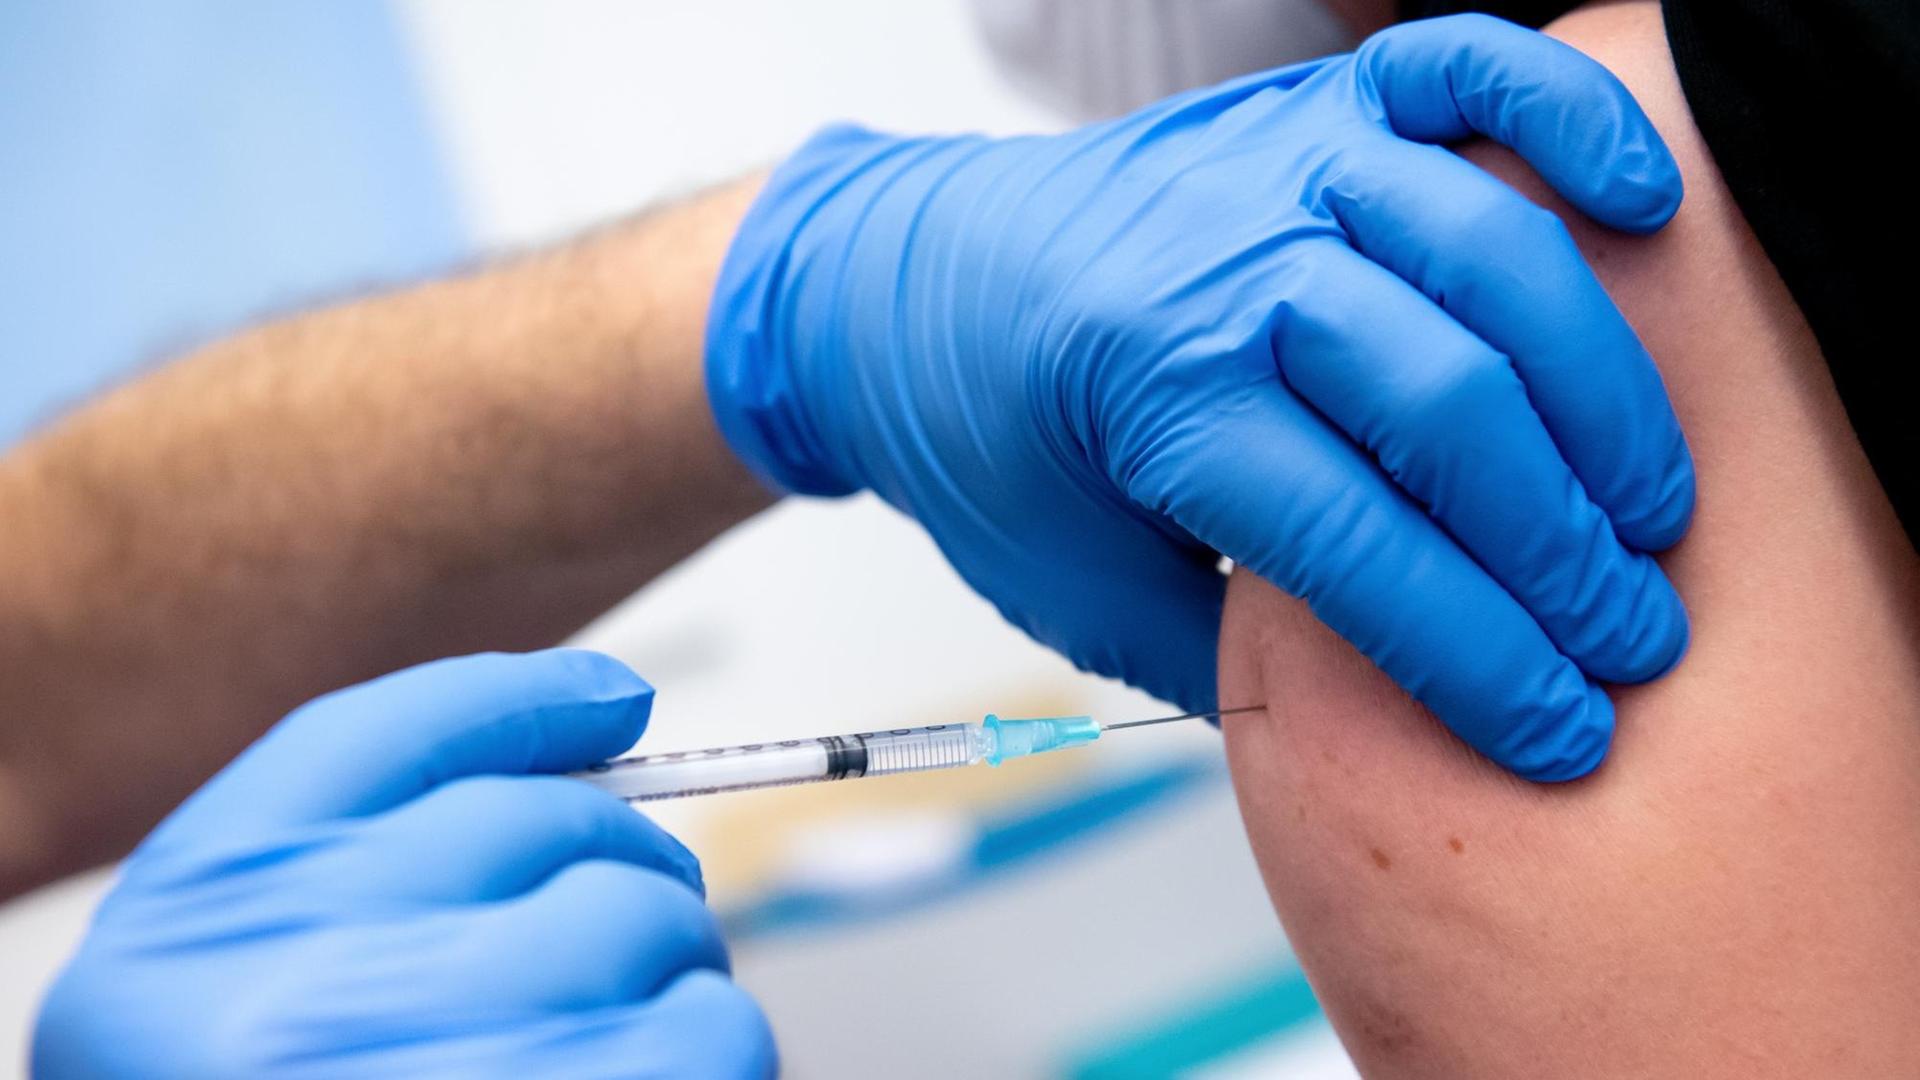 Ein Mitarbeiter der Asklepios Klinik wird von einem Kollegen mit dem Corona-Impfstoff von Biontech/Pfizer geimpft. Zahlreiche Mitarbeiter der Klinik haben sich gegen das Coronavirus impfen lassen.